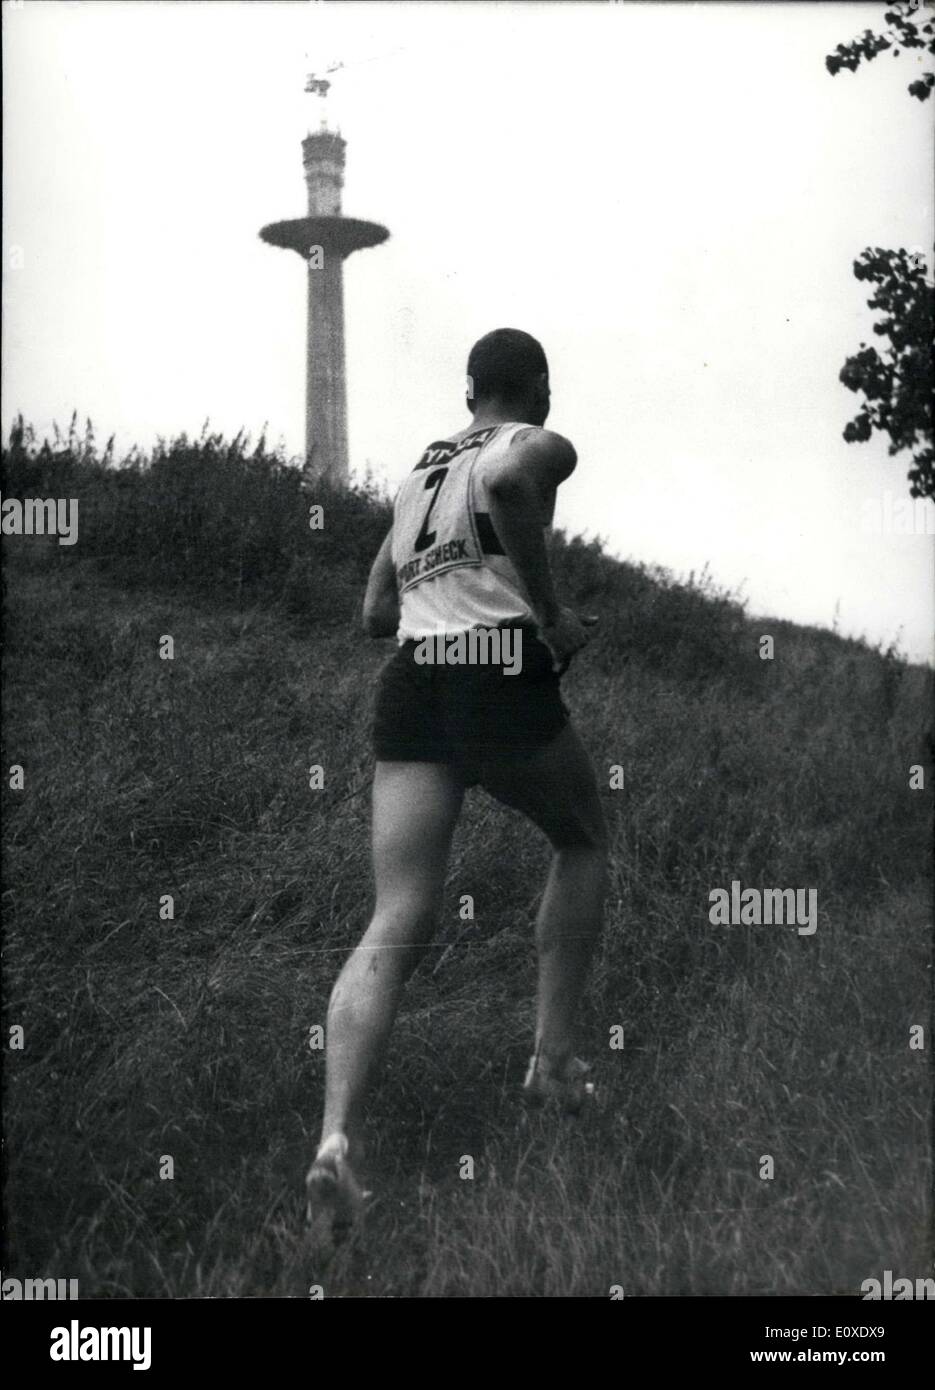 Juin 28, 1966 - Les premiers Jeux Olympiques pour les Jeux Olympiques de Munich a été testé aujourd'hui par l'Association des sports de Bavière. Le cours est le 4 000m distance à proximité de pentathlon Oberwiesenfeld(Parc olympique) à Munich. Ce tronçon a chaque niveau de difficulté nécessaire pour une course : courbes, dégradés, et des fossés. Notre photo montre le Fraundurfer pentathlète bavarois, qui a couru le 4000 m en 14:00. Banque D'Images